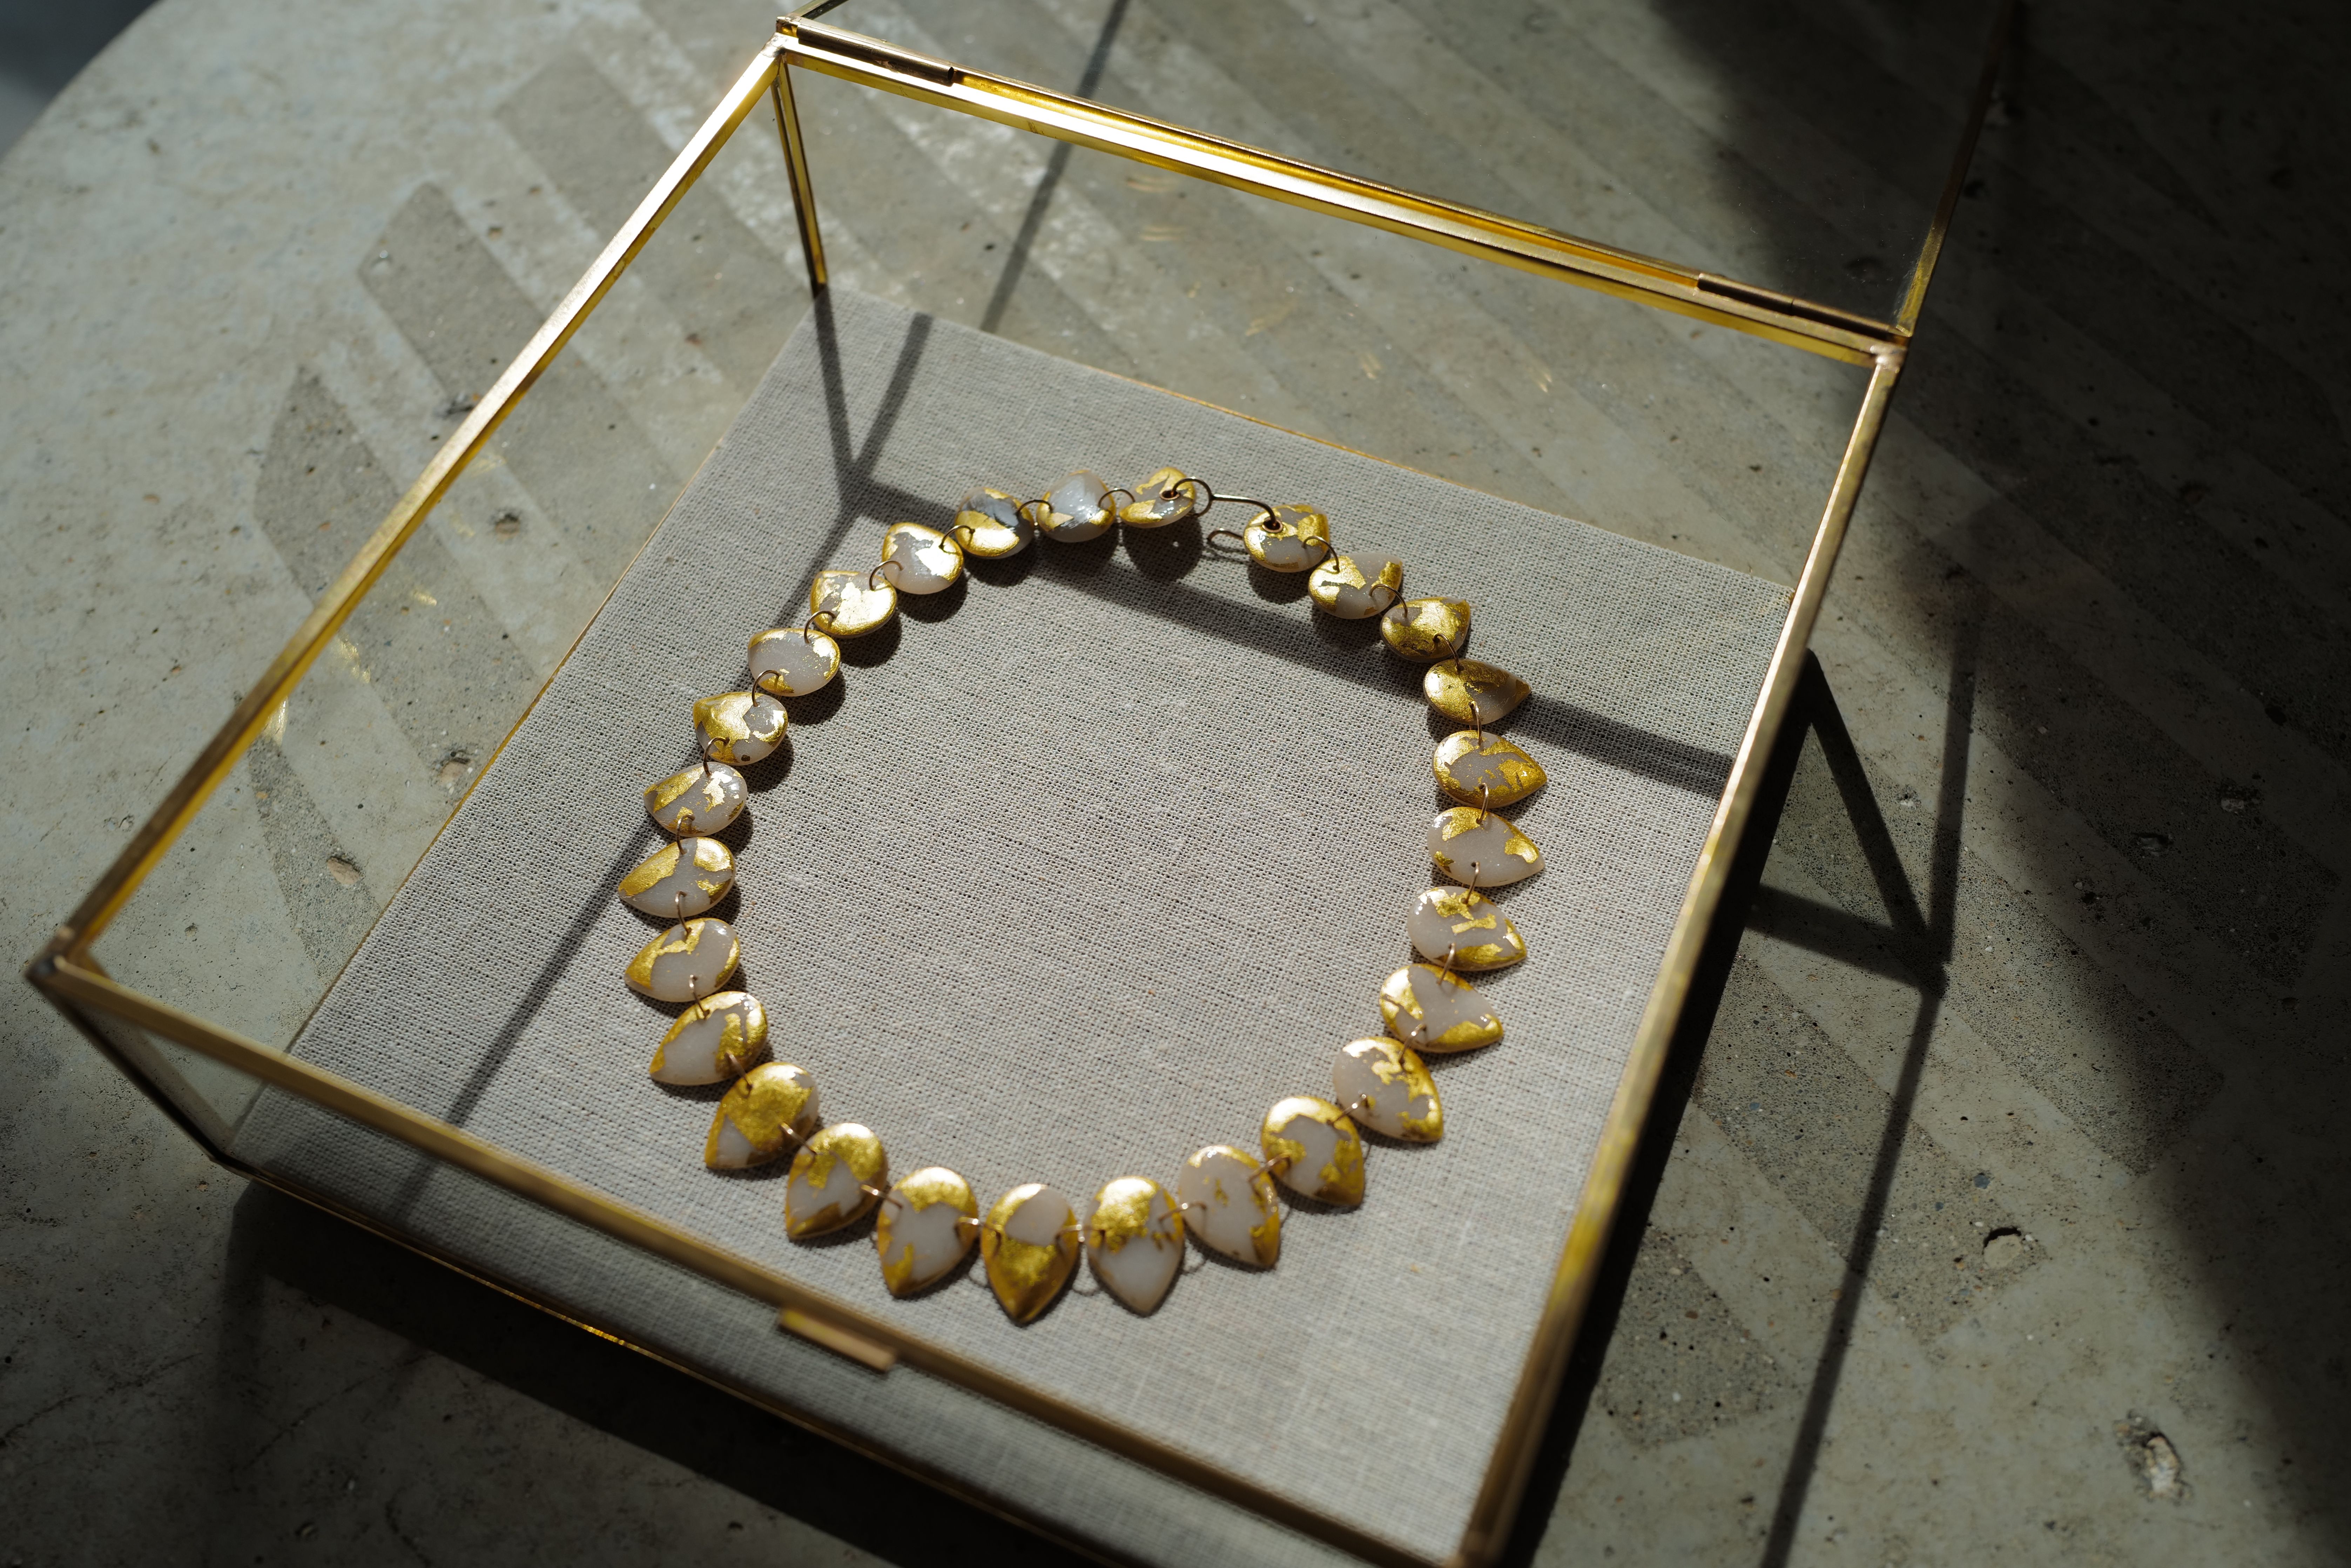 Product Image for Droplet Necklace, 22k Gold Leaf (Reversible)